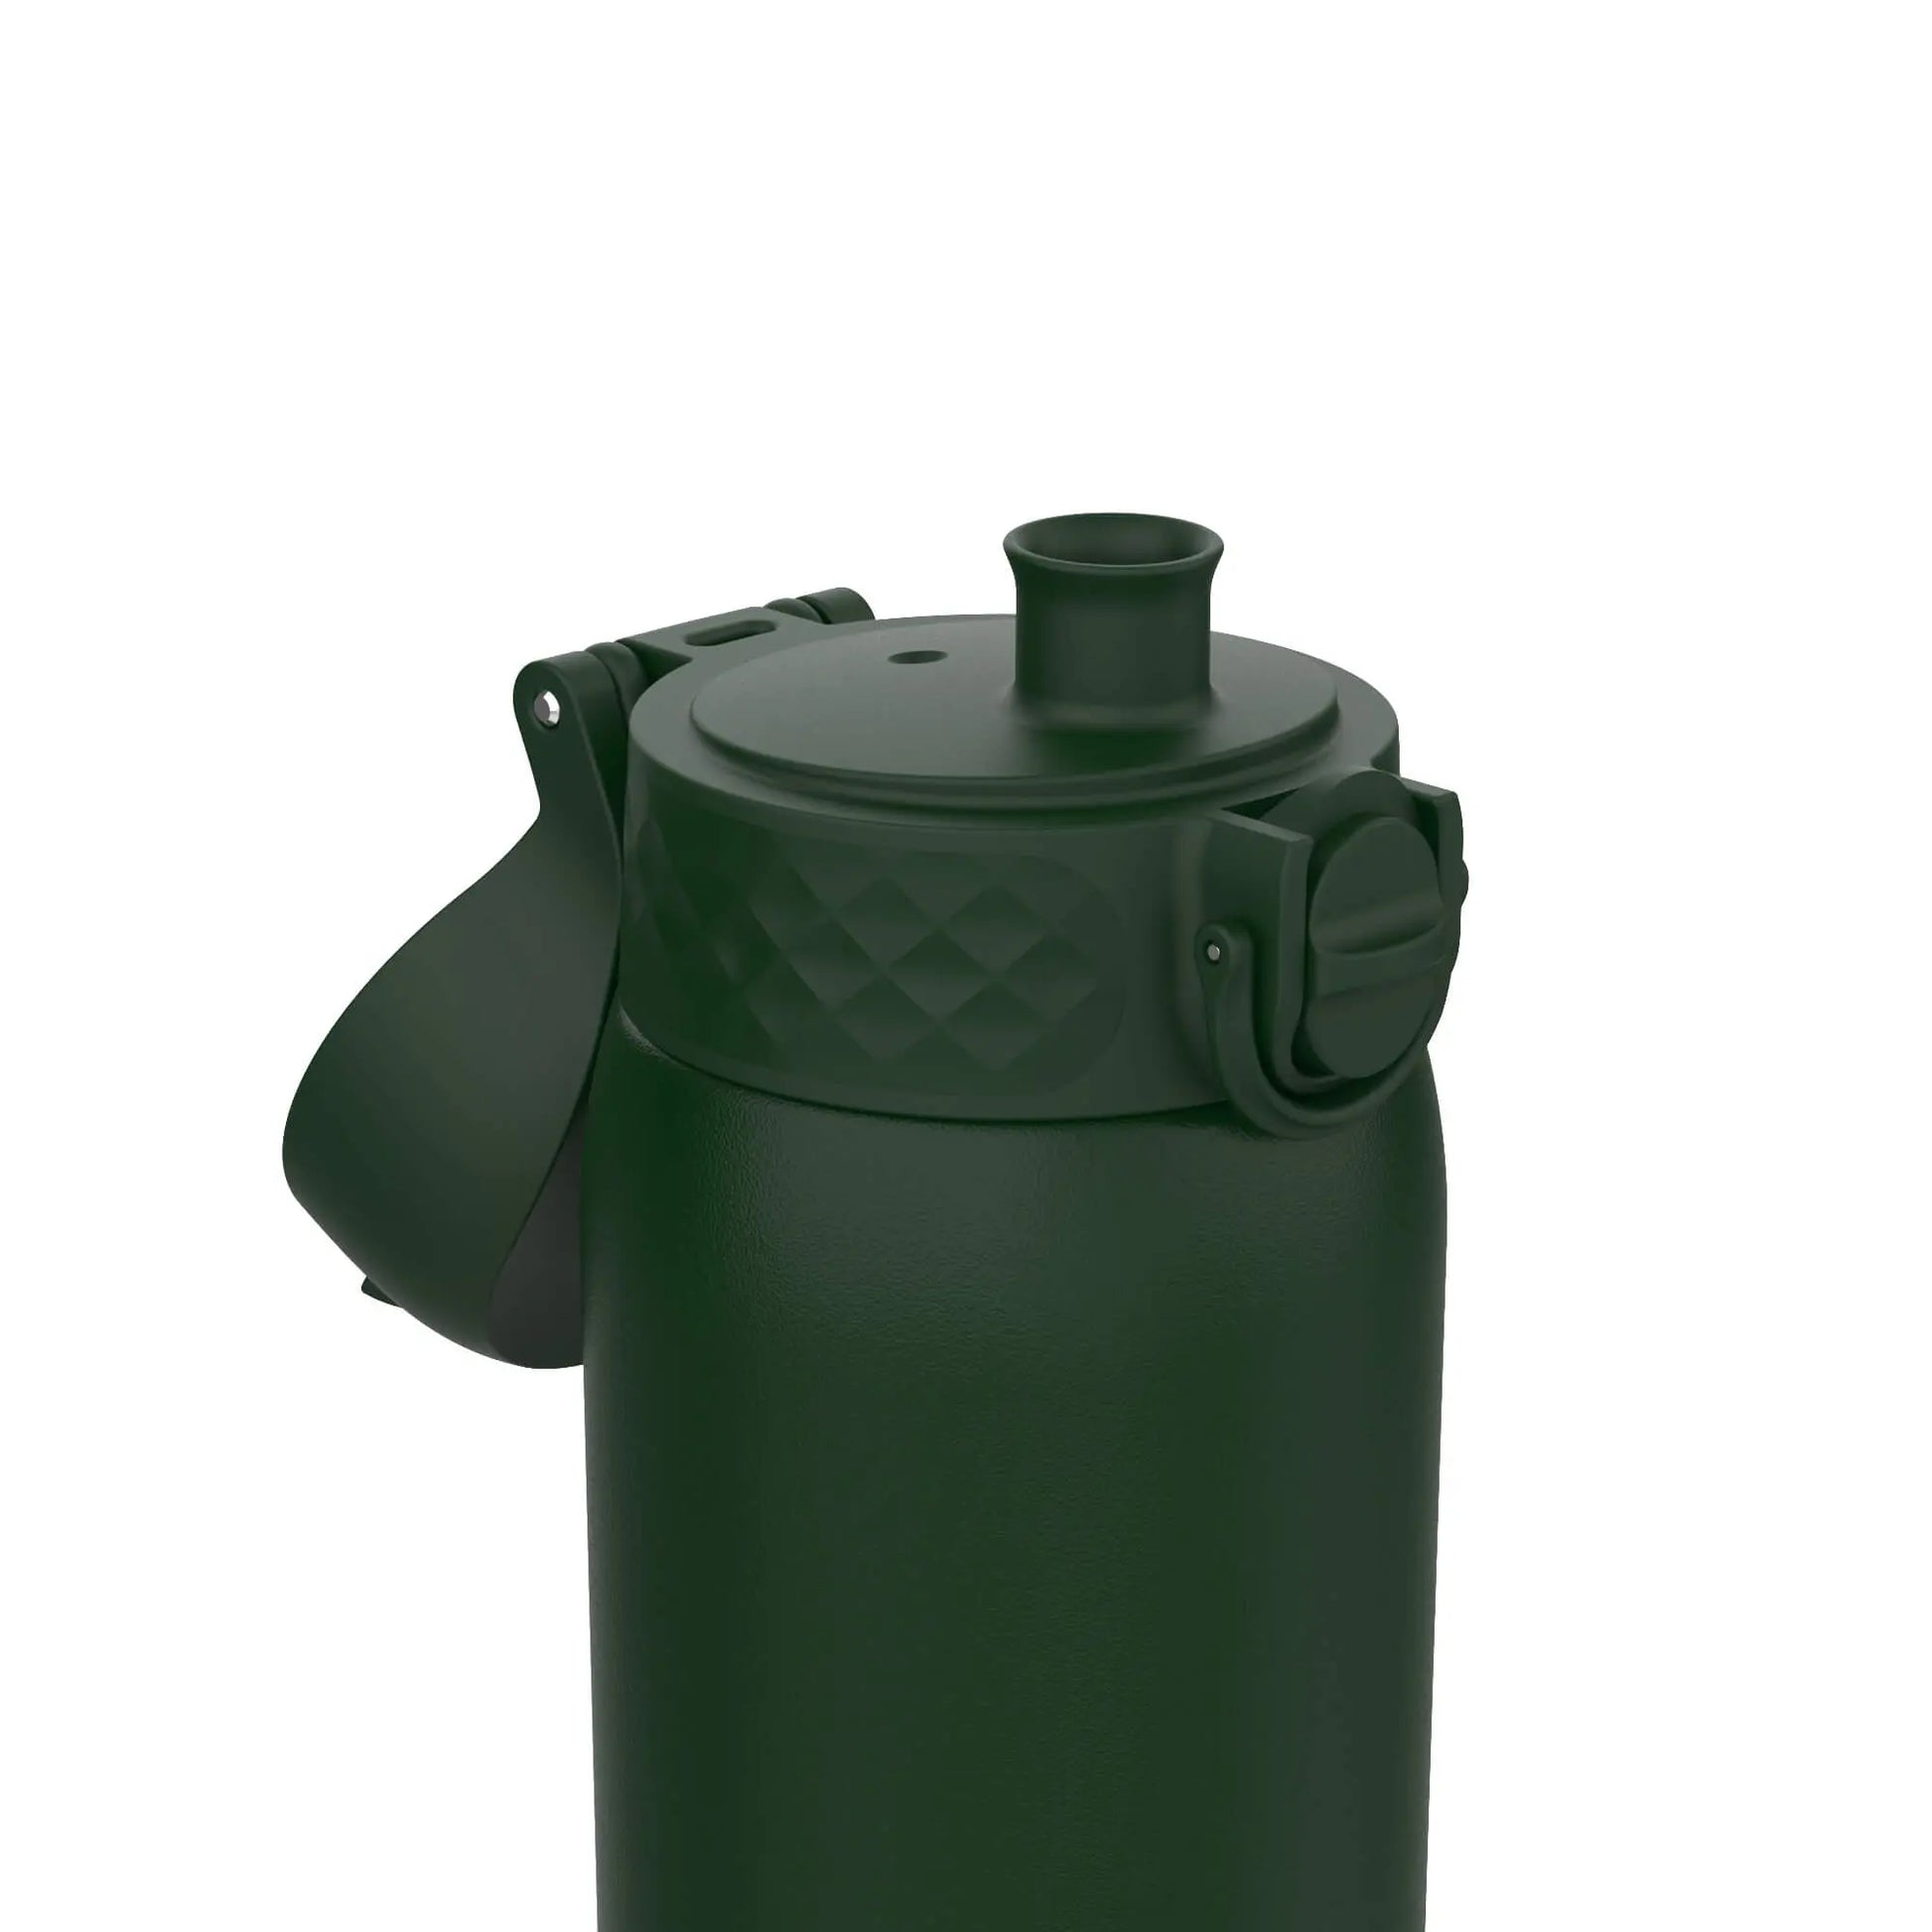 Leak Proof Kids Water Bottle, Stainless Steel, Dark Green, 400ml (13oz) Ion8